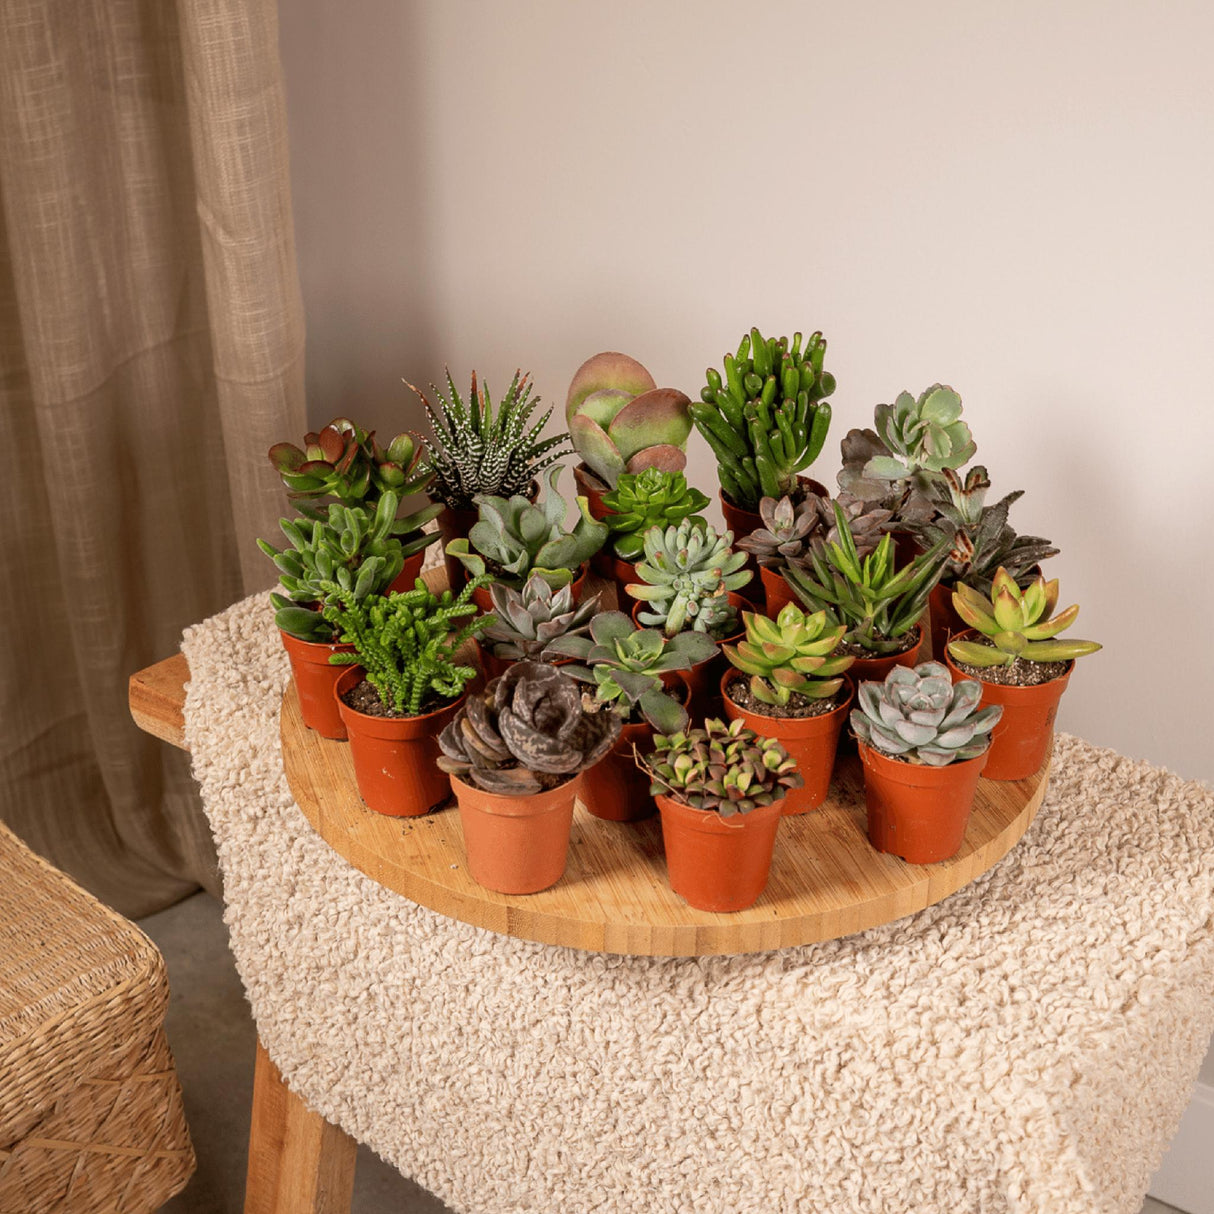 Livraison plante Box 20 baby cactus & succulentes - 10cm - Ø5,5